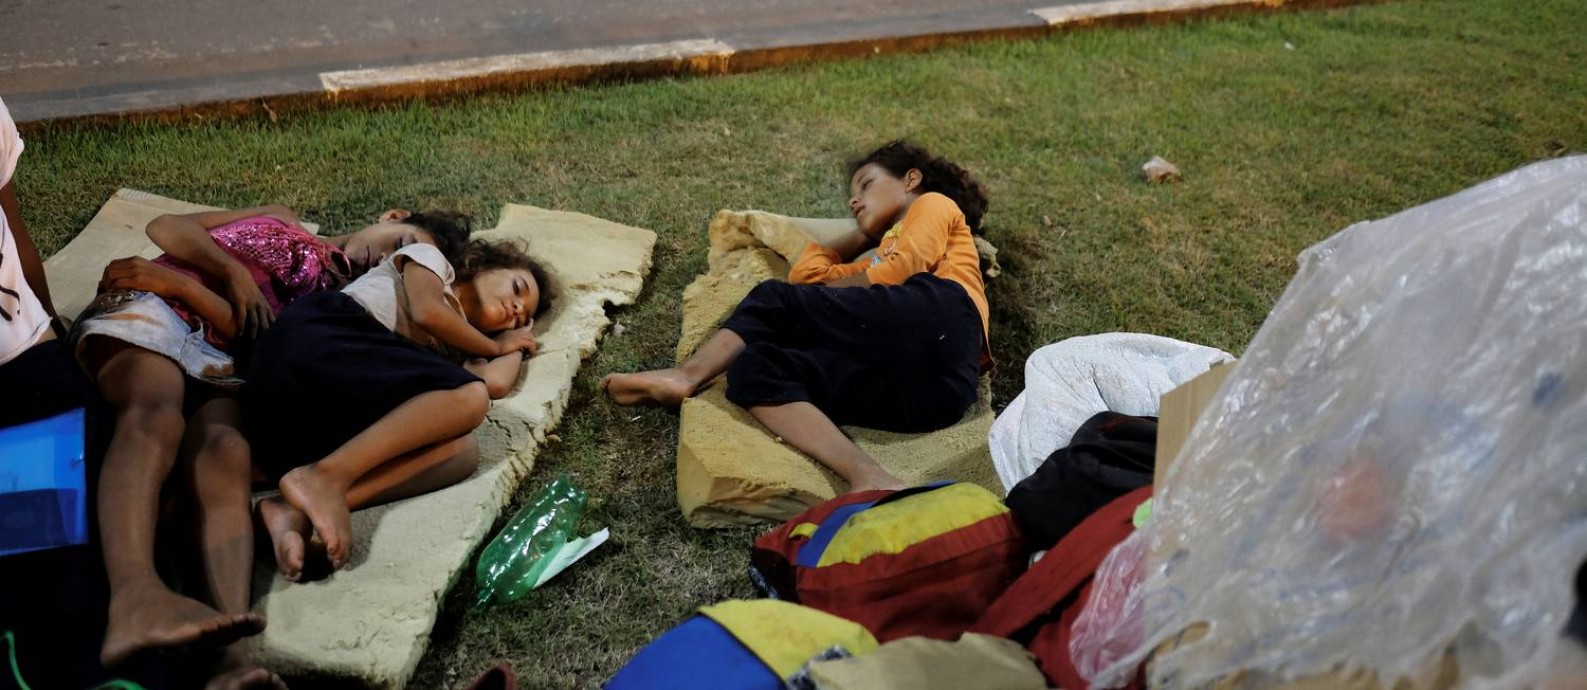 
Crianças venezuelanas dormem à beira de estrada em frente à estação de ônibus de Boa Vista: fluxo de imigrantes pode aumentar com piora da crise, diz prefeita da capital de Roraima
Foto:
NACHO DOCE/Reuters/23-08-2018
